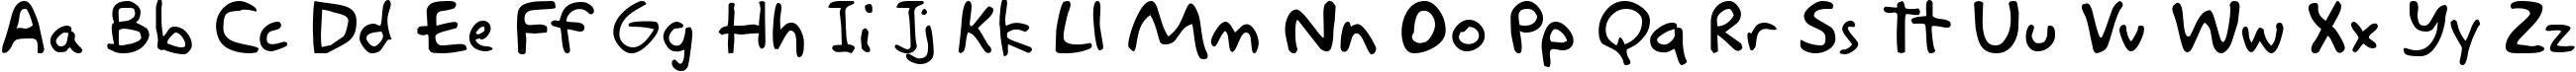 Пример написания английского алфавита шрифтом Akbar Plain